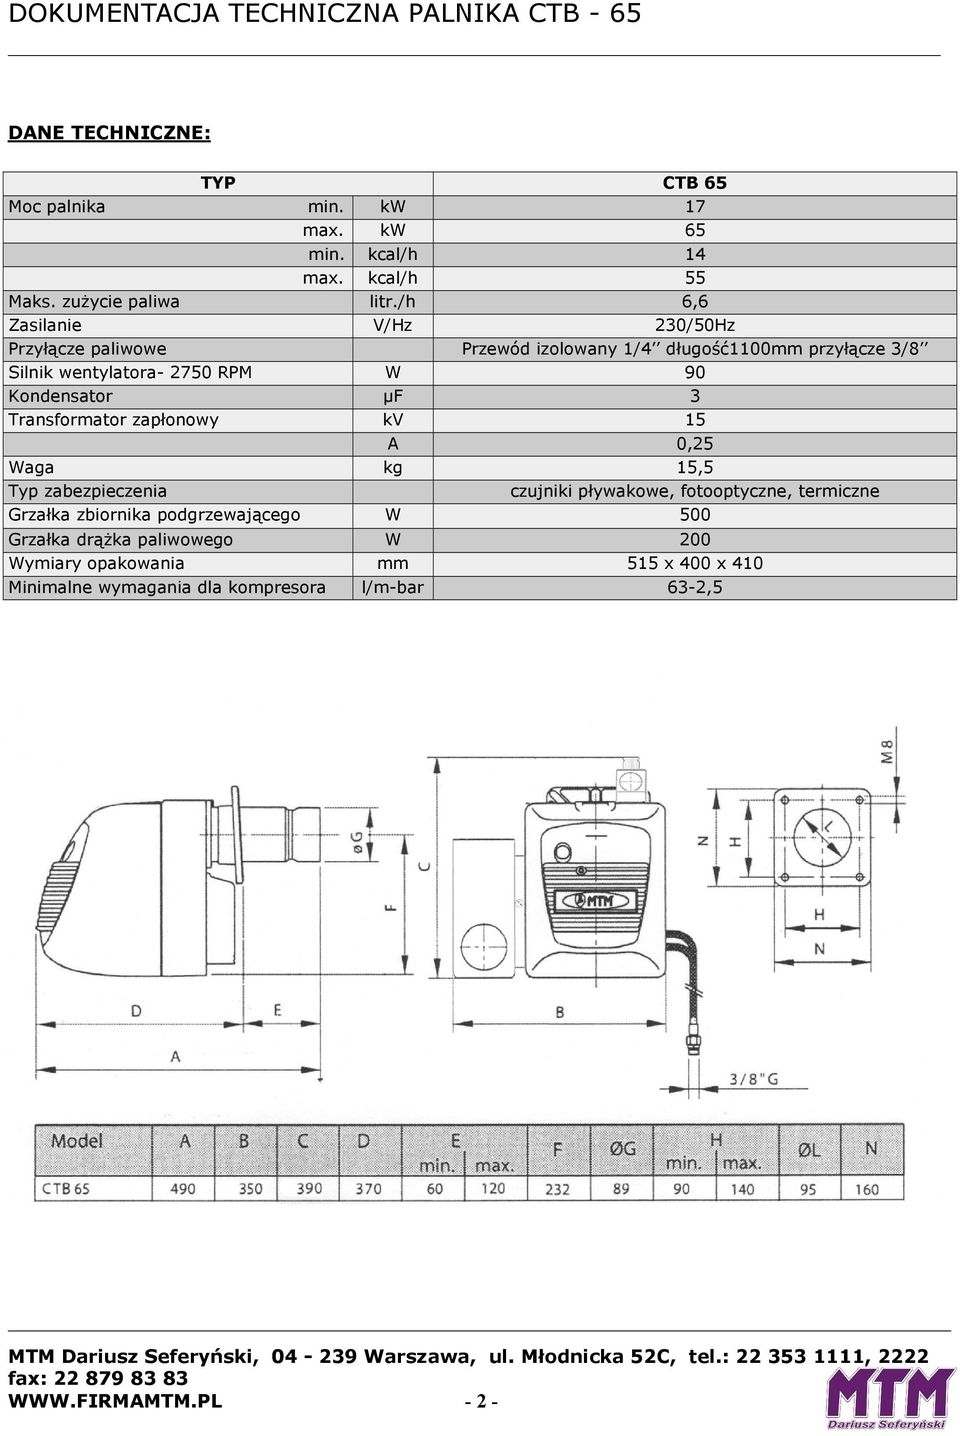 Kondensator µf 3 Transformator zapłonowy kv 15 A 0,25 Waga kg 15,5 Typ zabezpieczenia czujniki pływakowe, fotooptyczne, termiczne Grzałka